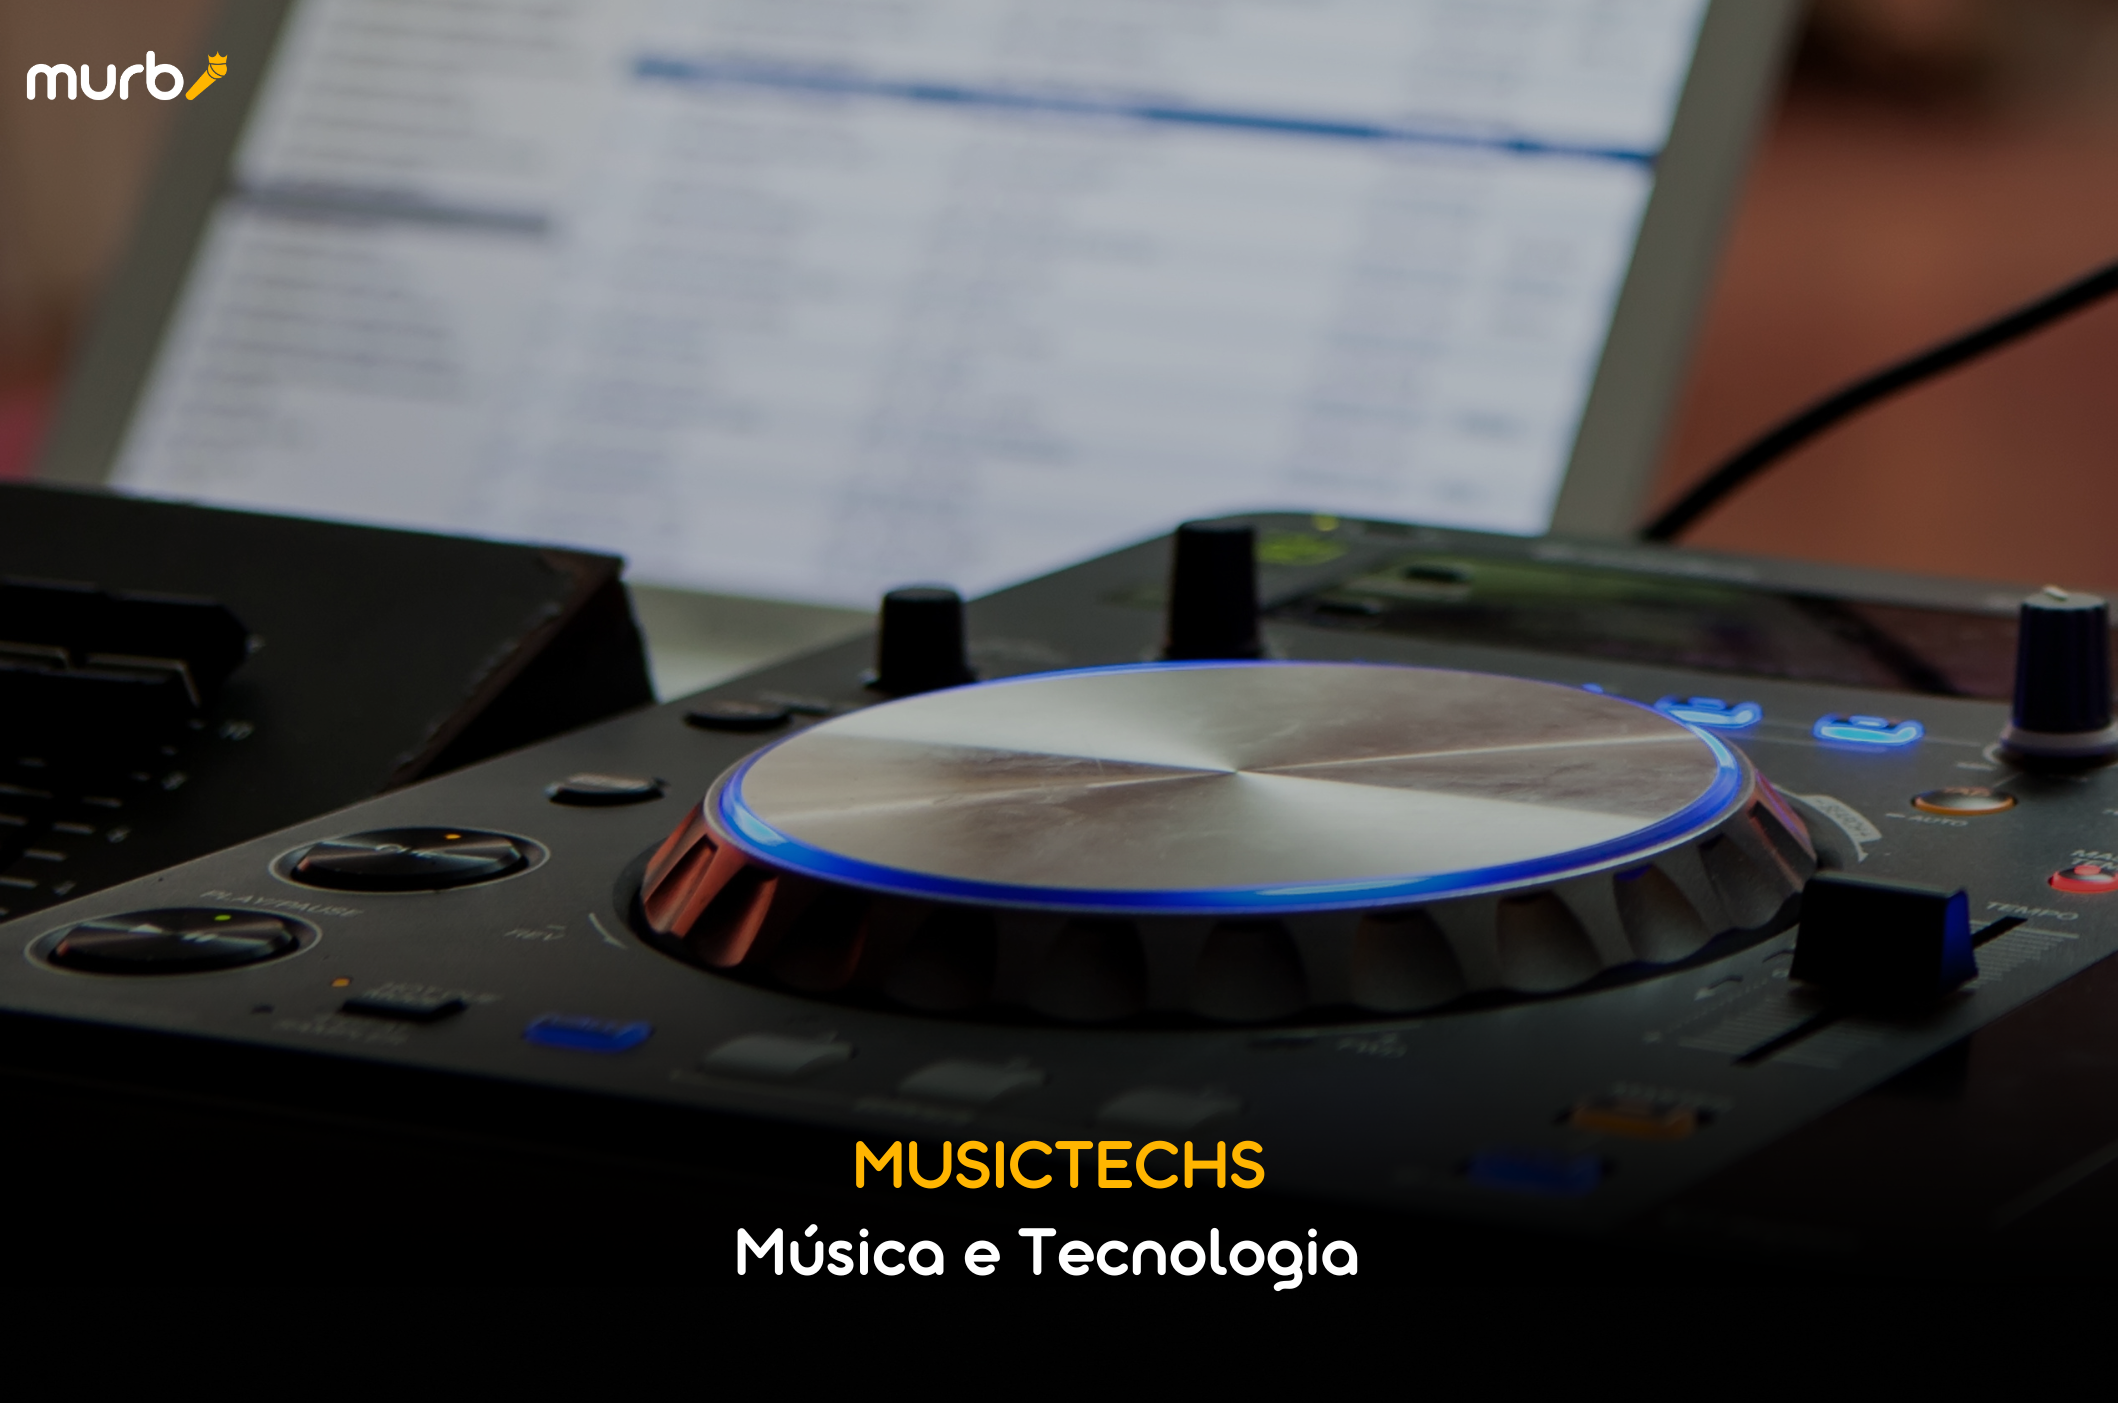 Musictechs - Música e tecnologia